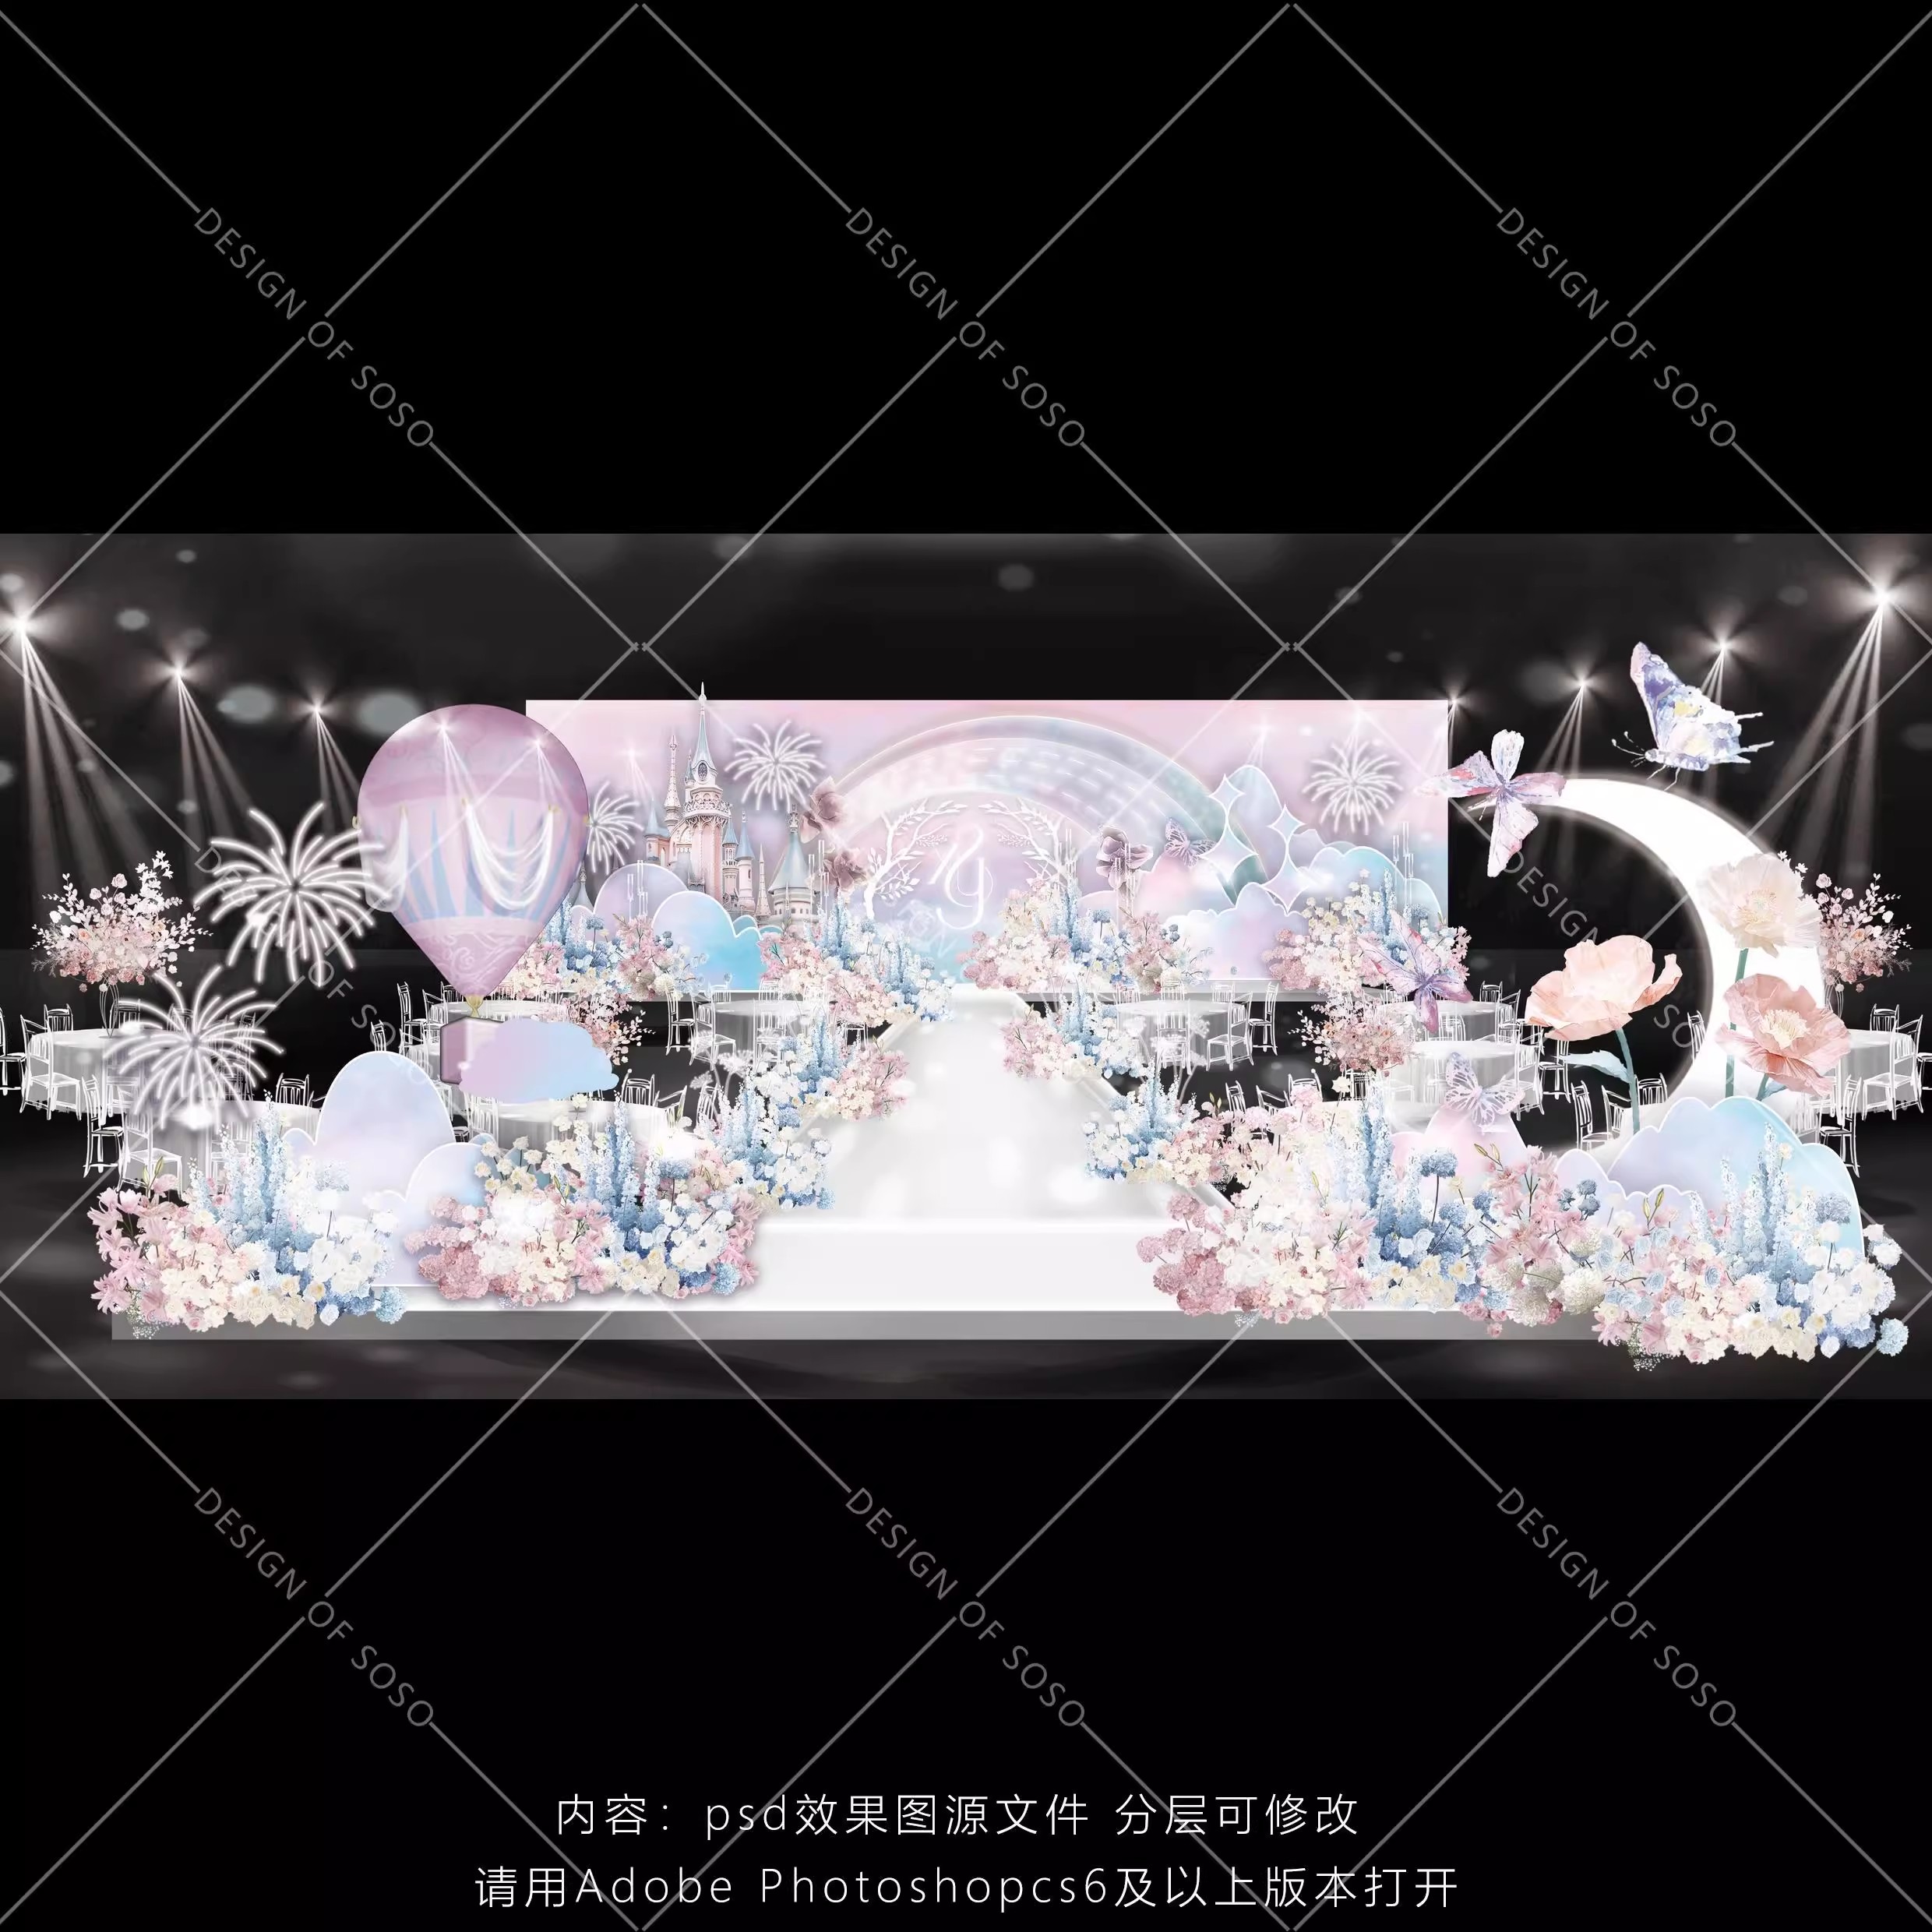 欧式城堡粉蓝色梦幻主题婚礼背景布置 效果图热气球烟花灯psd素材